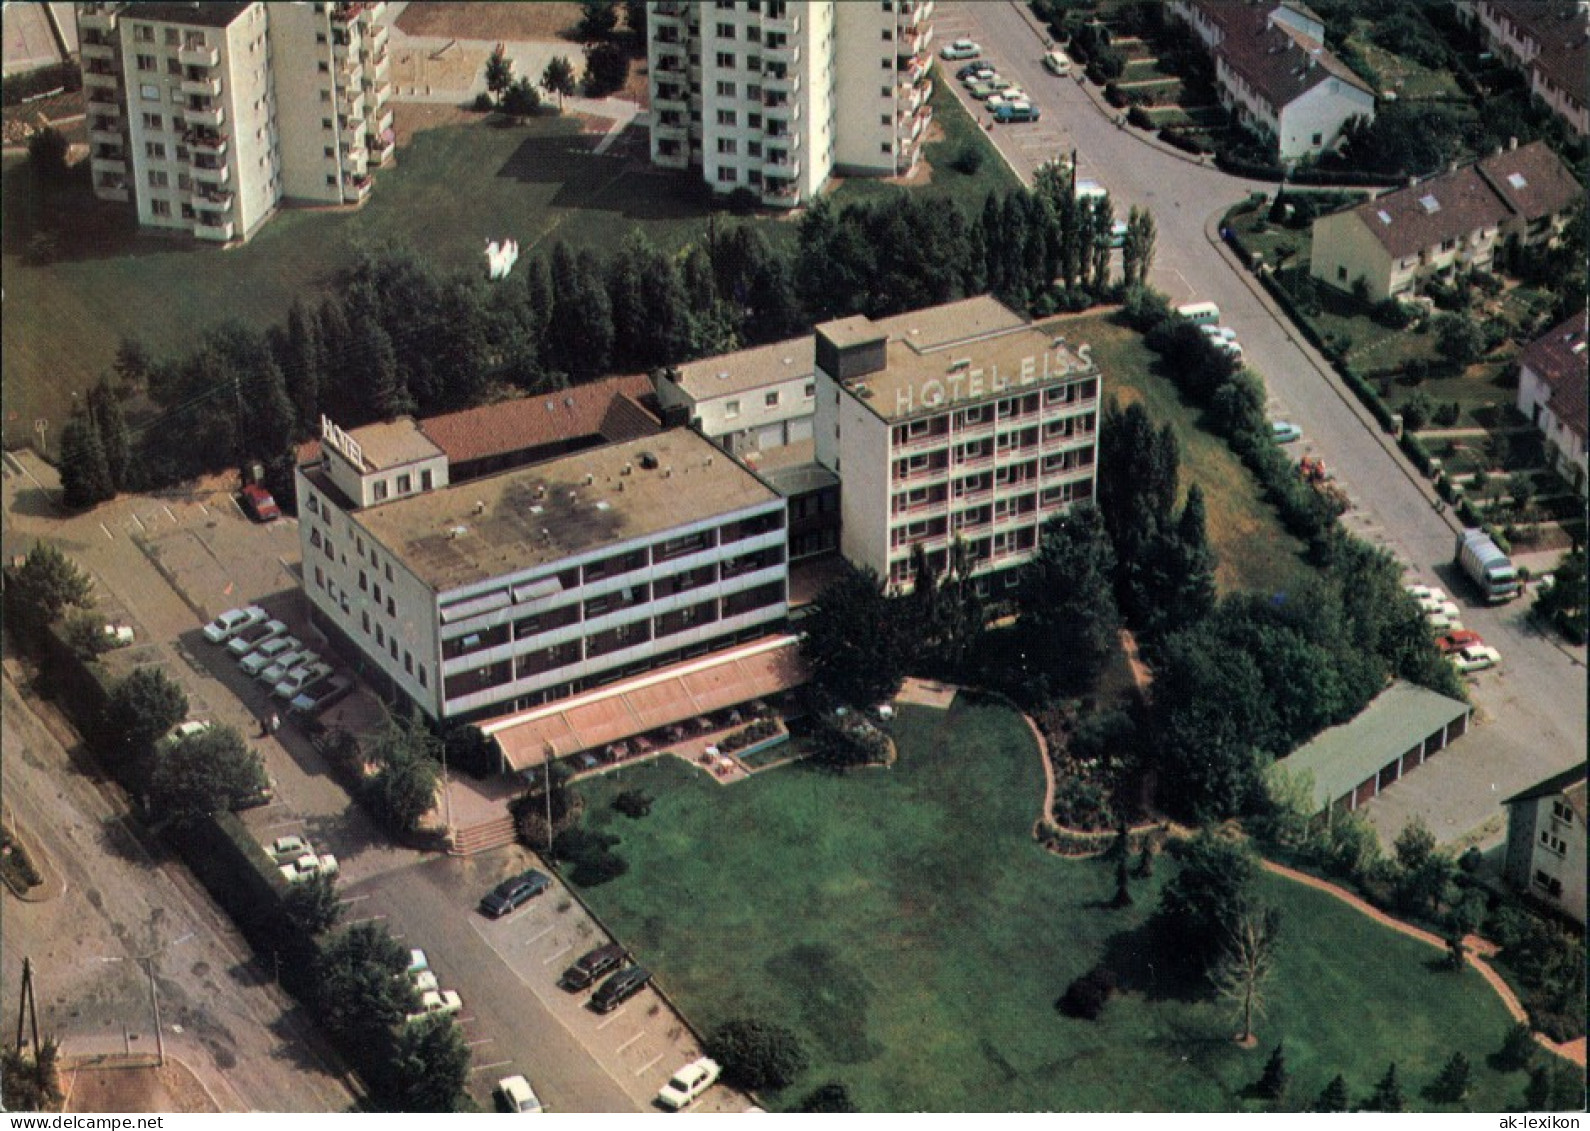 Ansichtskarte Leonberg Hotel Eiss Vom Flugzeug Aus, Luftaufnahme 1970 - Leonberg